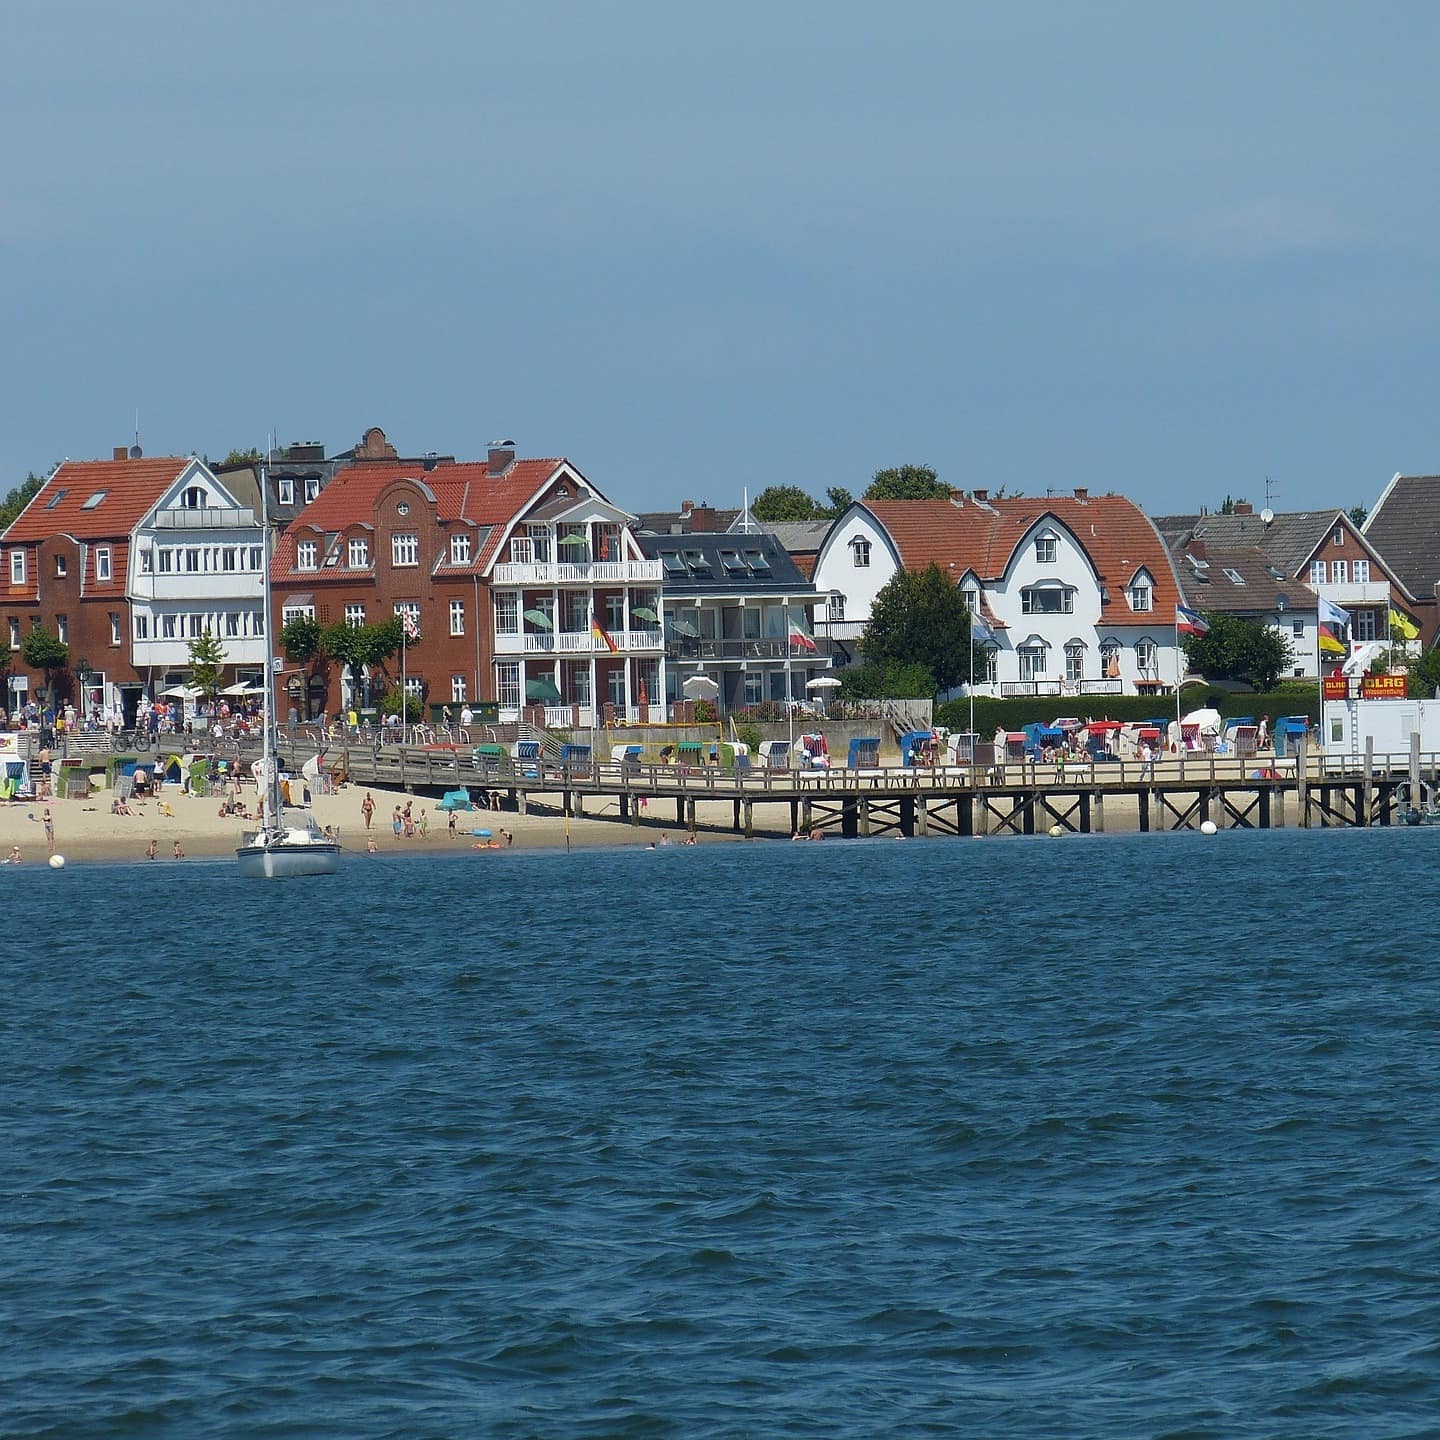 Blick vom Wasser auf den Strand und Häuser von Wyk auf Föhr